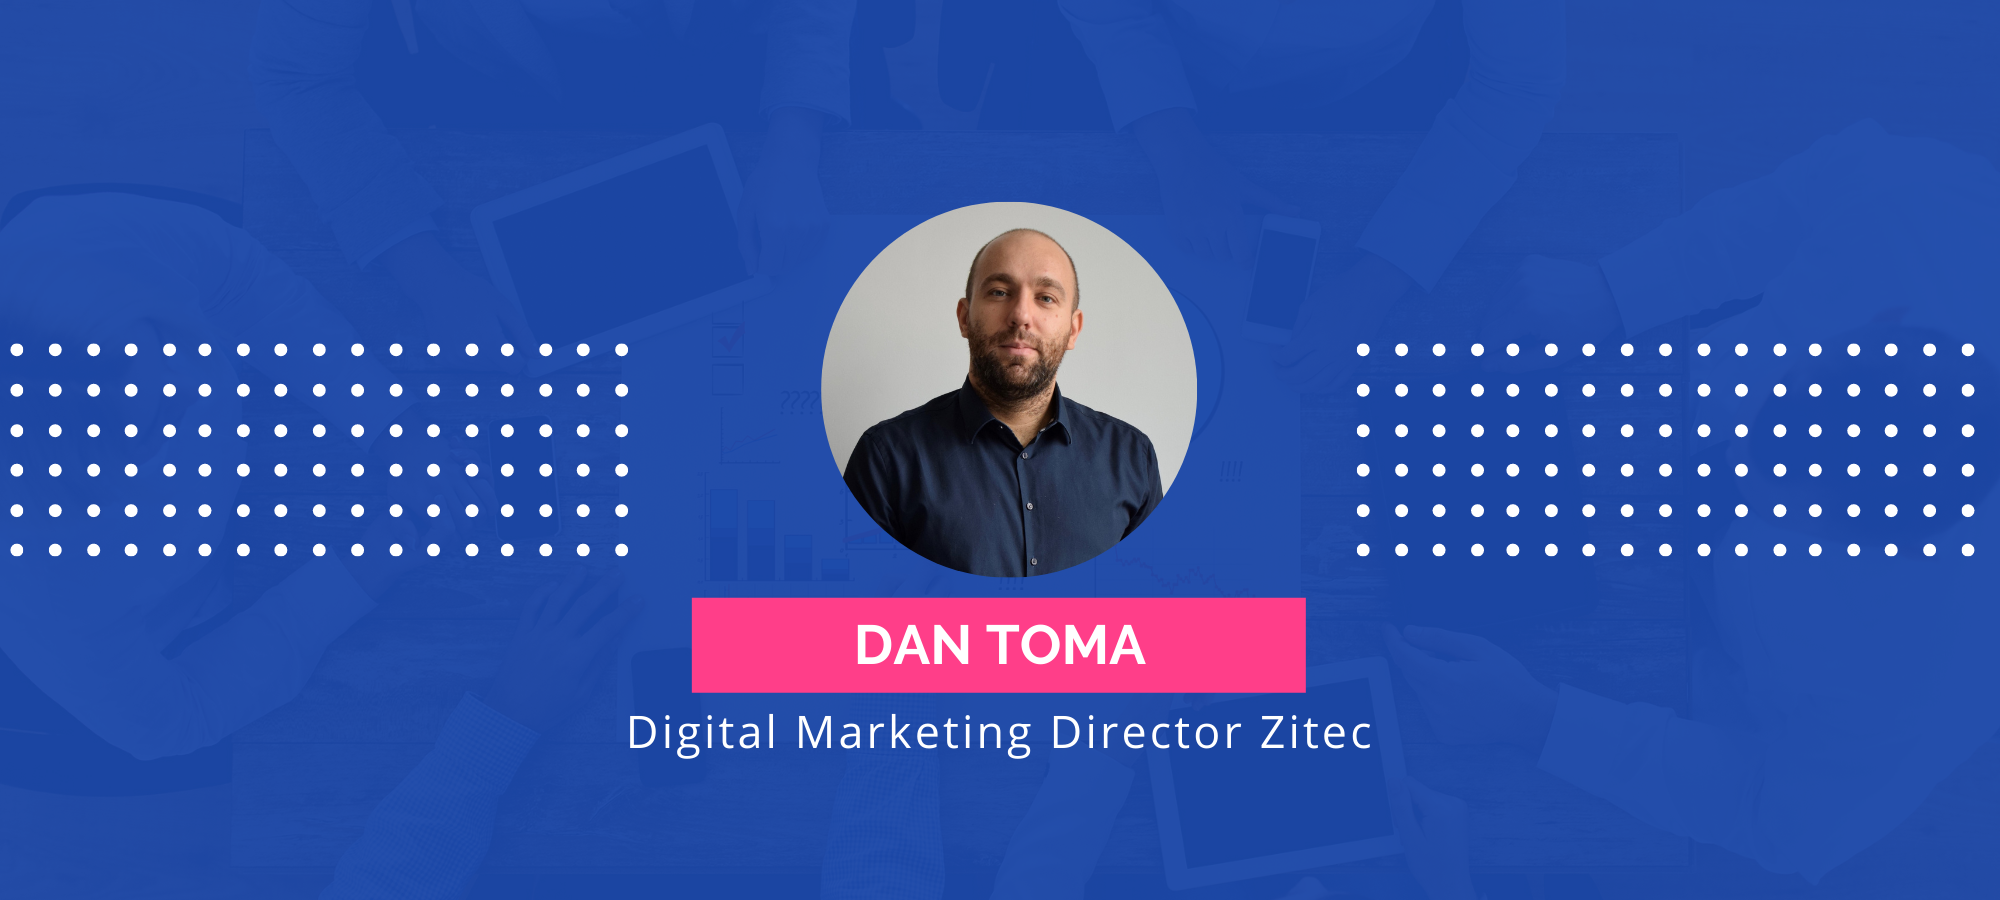 Divizia de Digital Marketing a Zitec a generat venituri de 2,25 milioane de euro în 2021 și devine Google Premier Partner